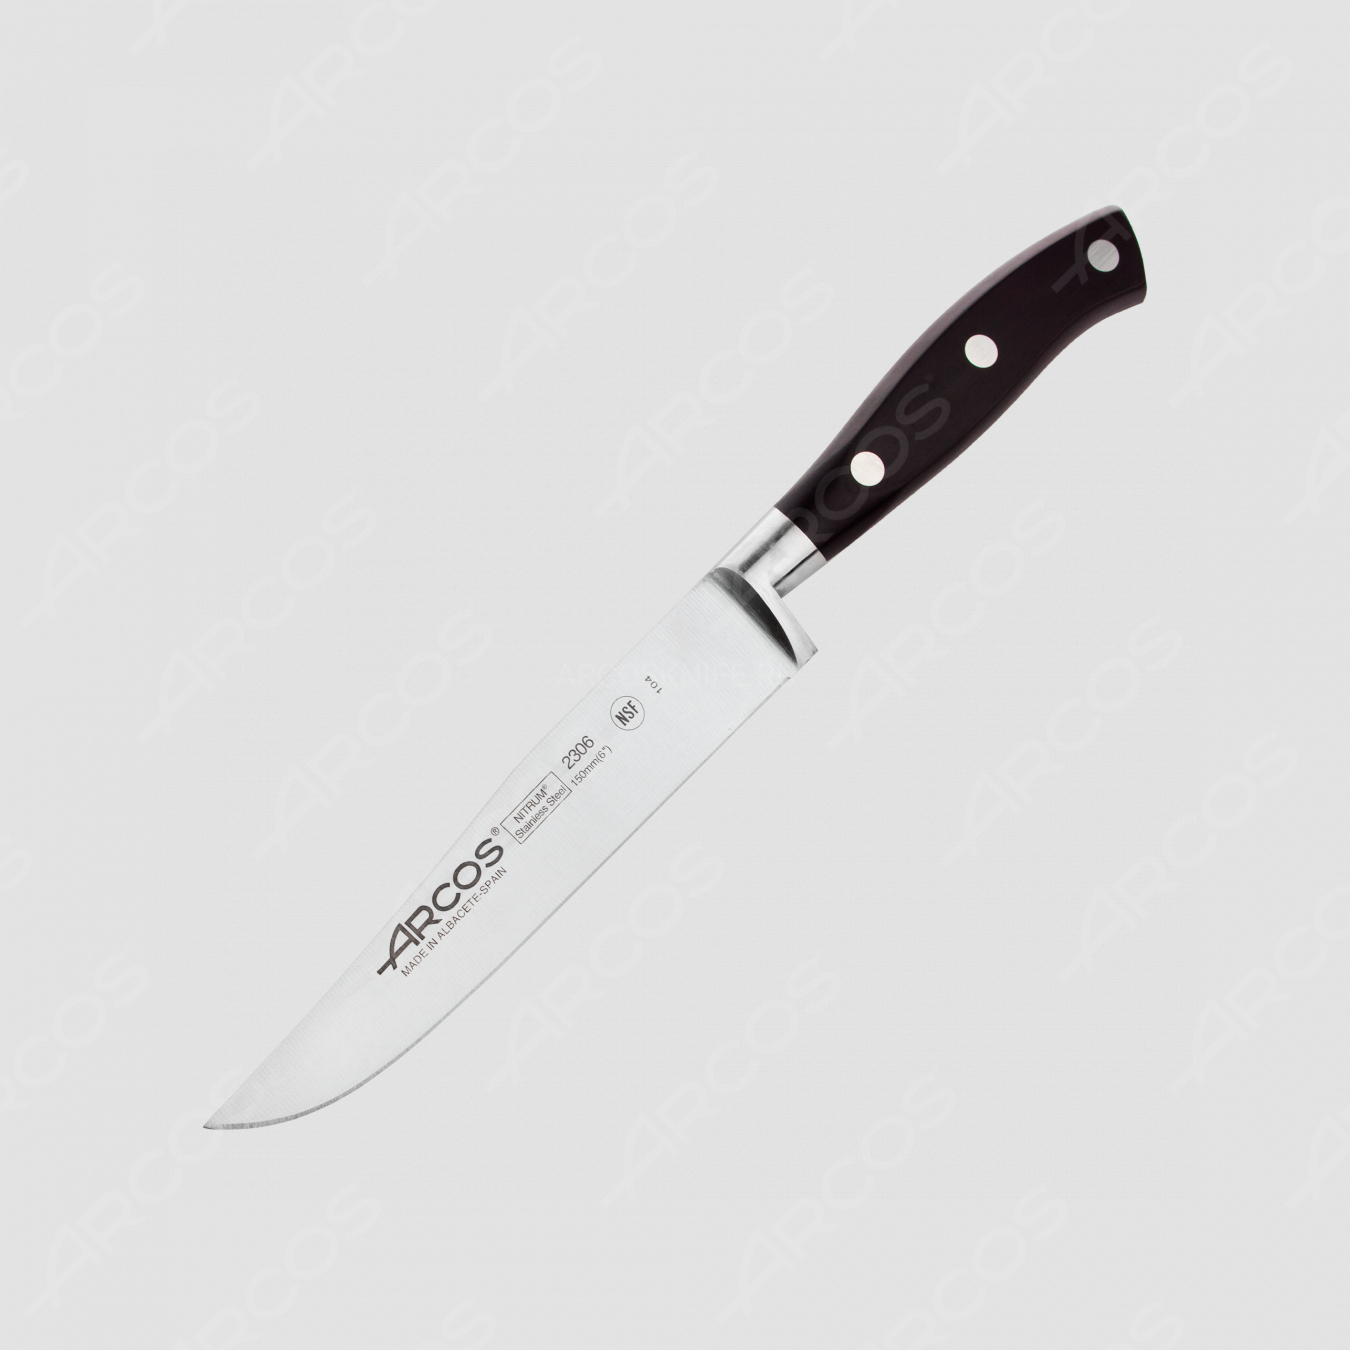 Нож кухонный универсальный, 15 см, серия Riviera, ARCOS, Испания